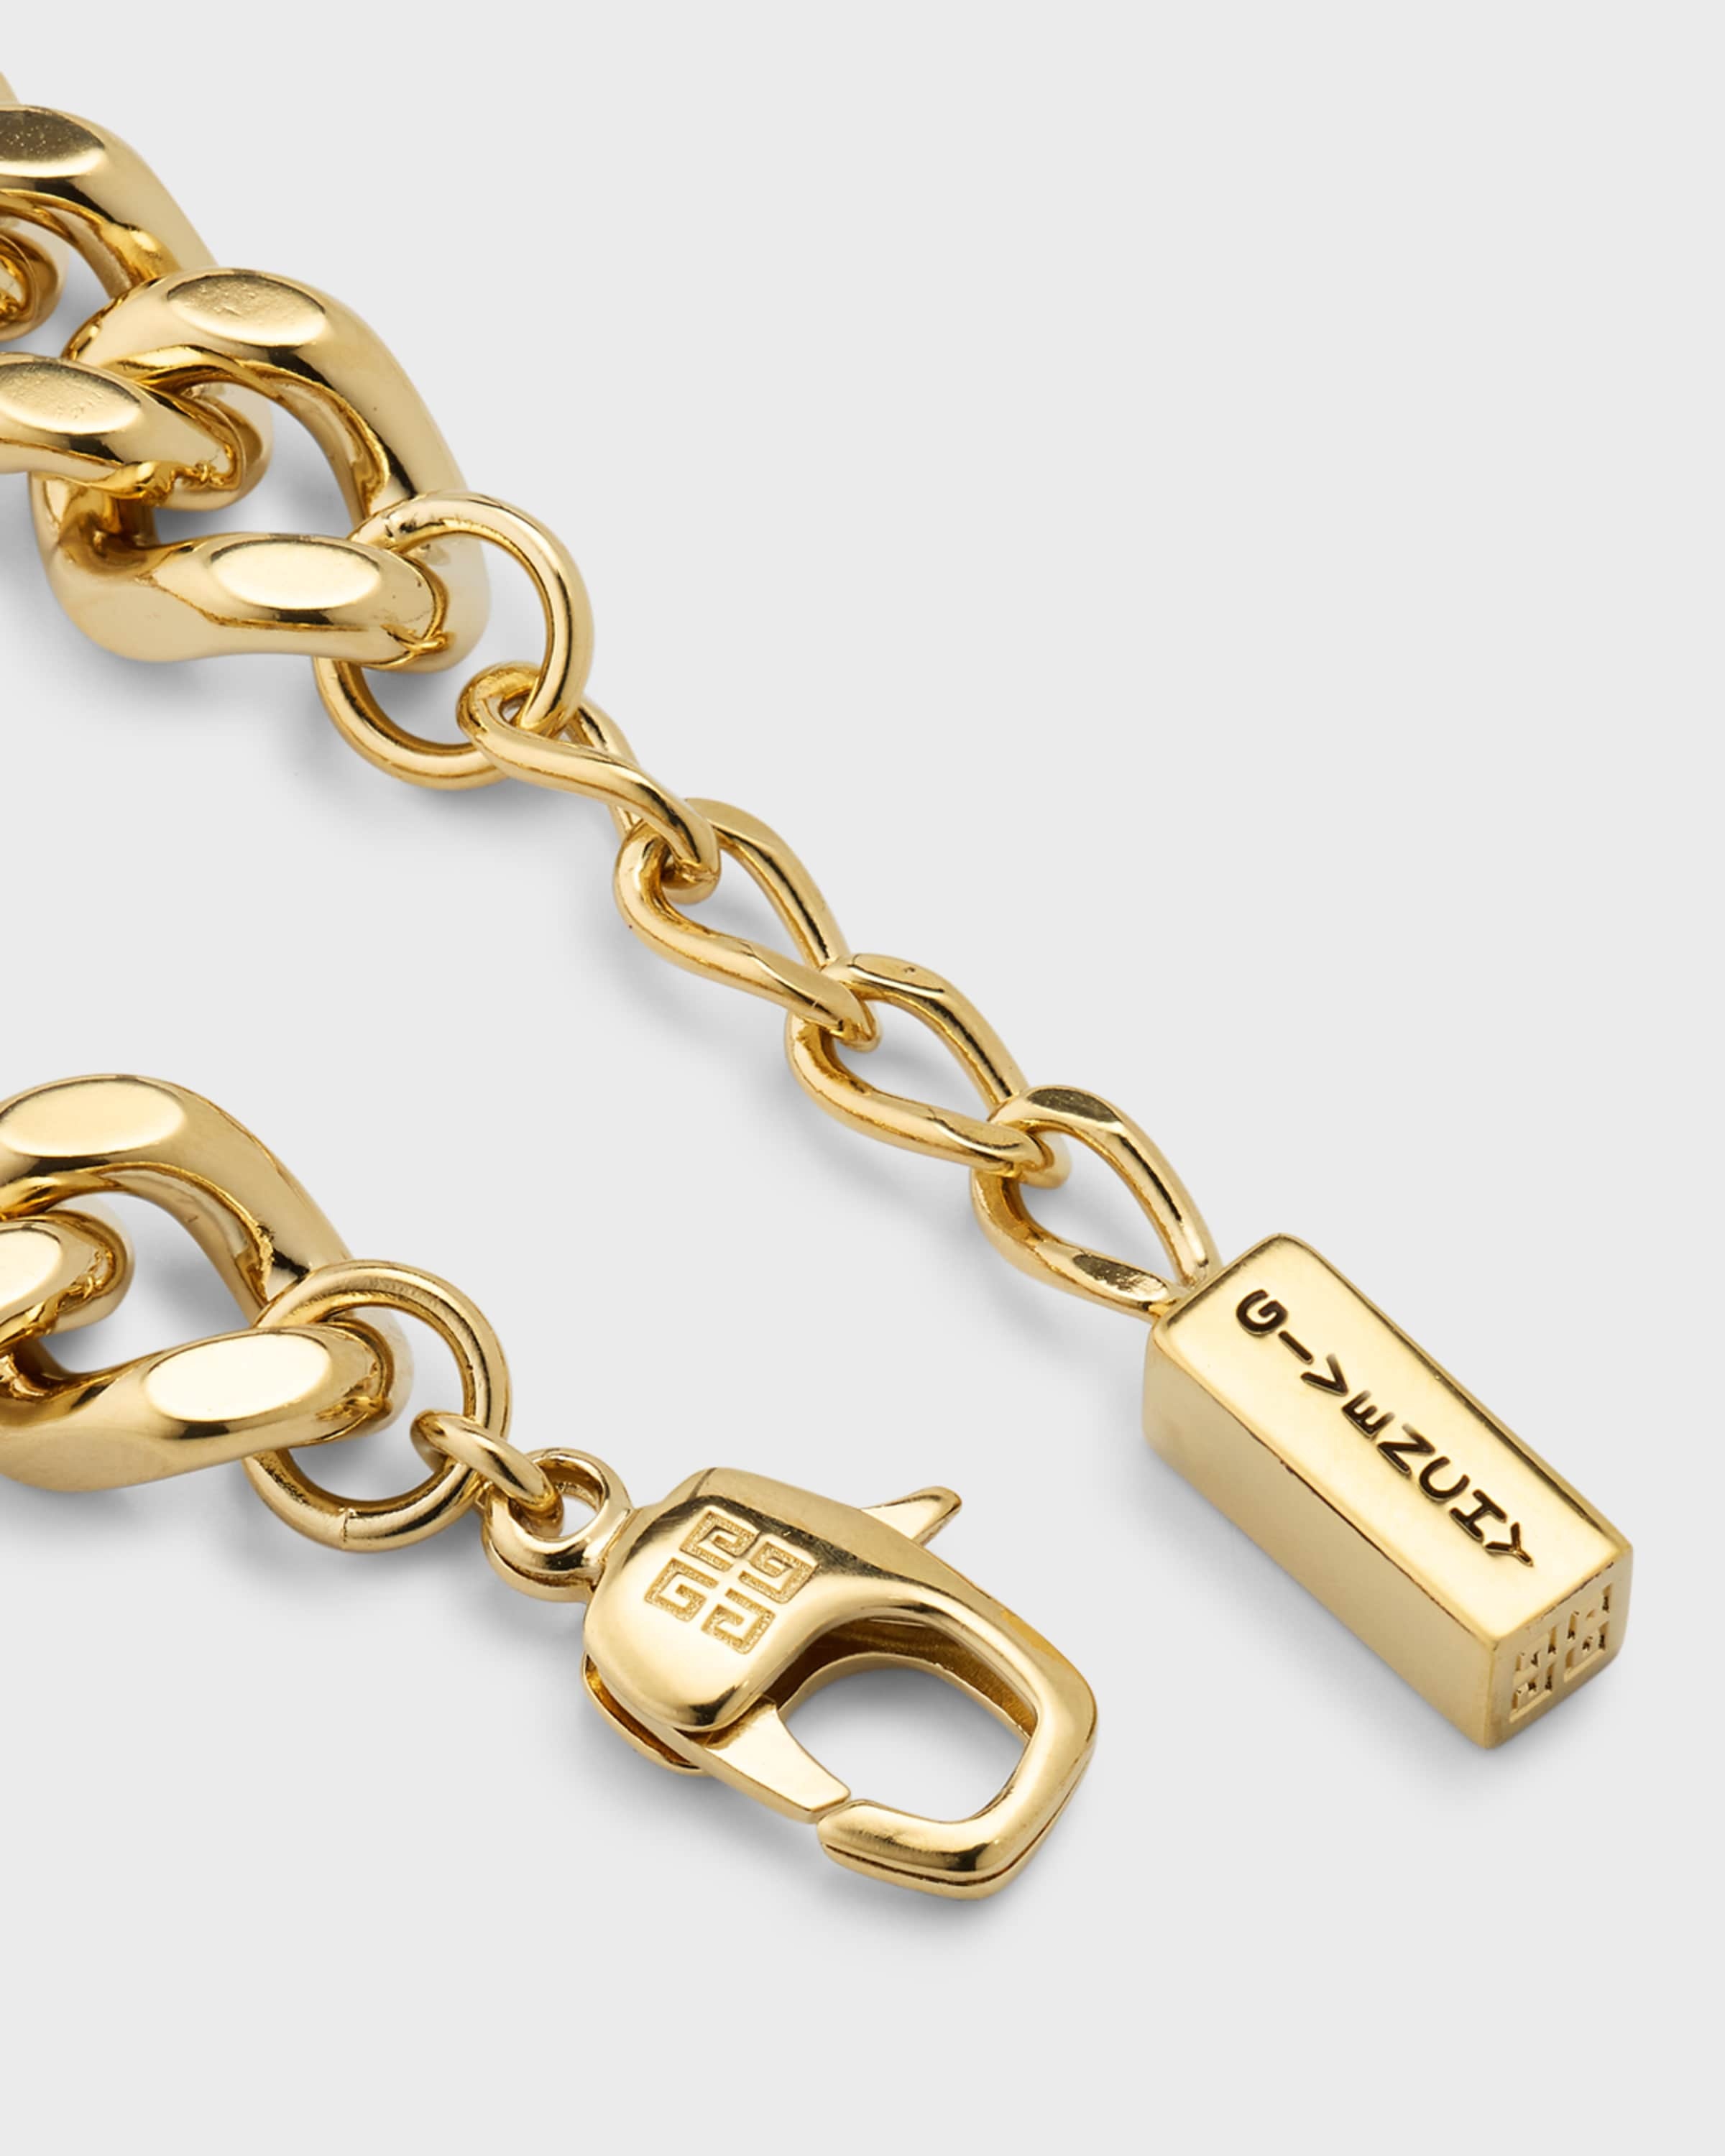 G-Chain Large Golden Bracelet - 4